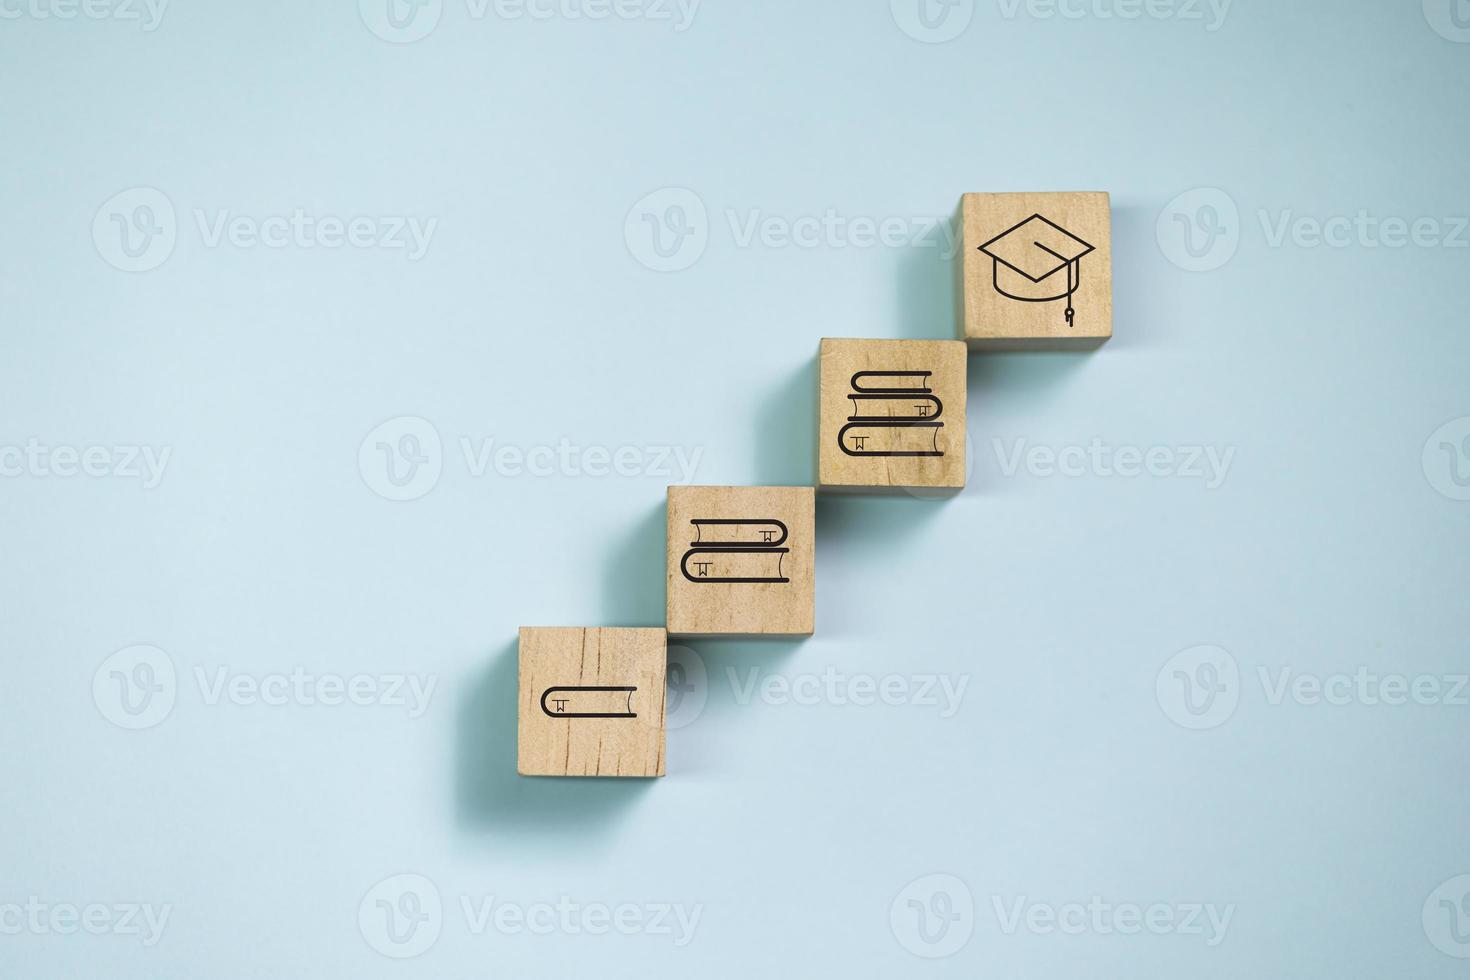 bovenaanzicht houten blokken op stap met boekpictogram om pictogram af te studeren. concept voor leren en onderwijs. foto